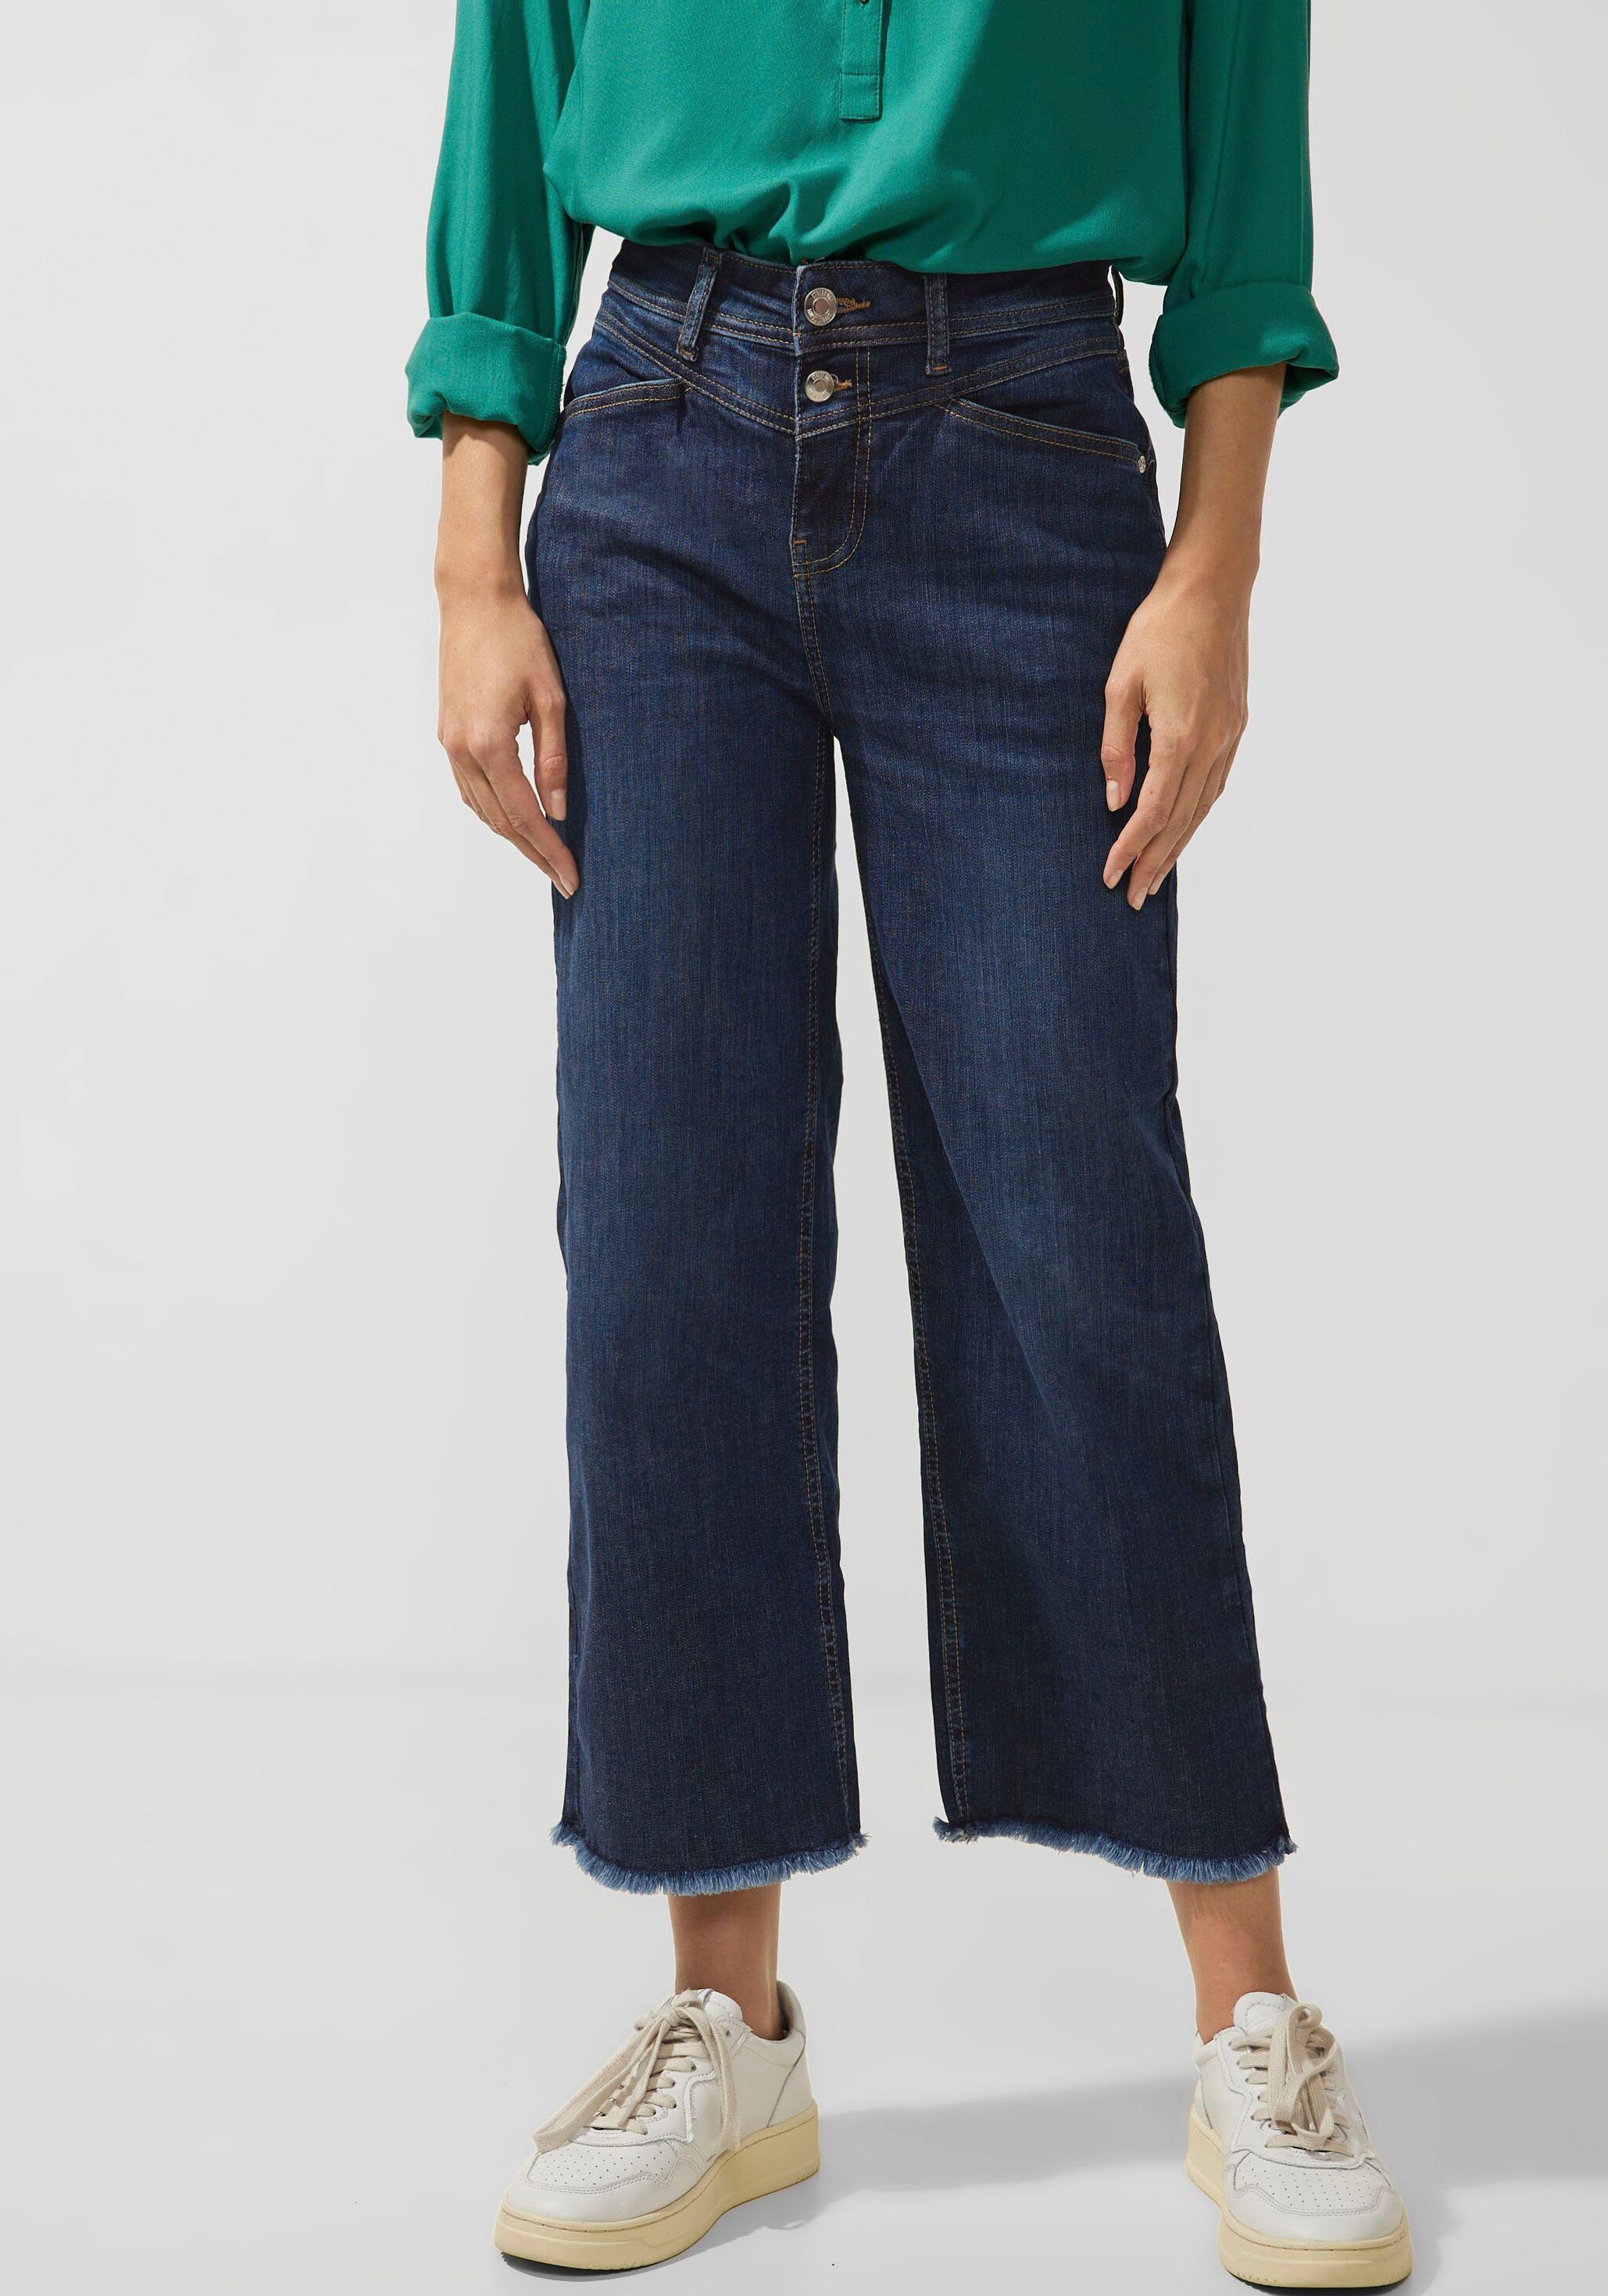 am zeitlos STREET dunkelblaue Ziernähten Jeans mit elegant macht das Modell Waschung Bund, Die ONE Weite und modischen